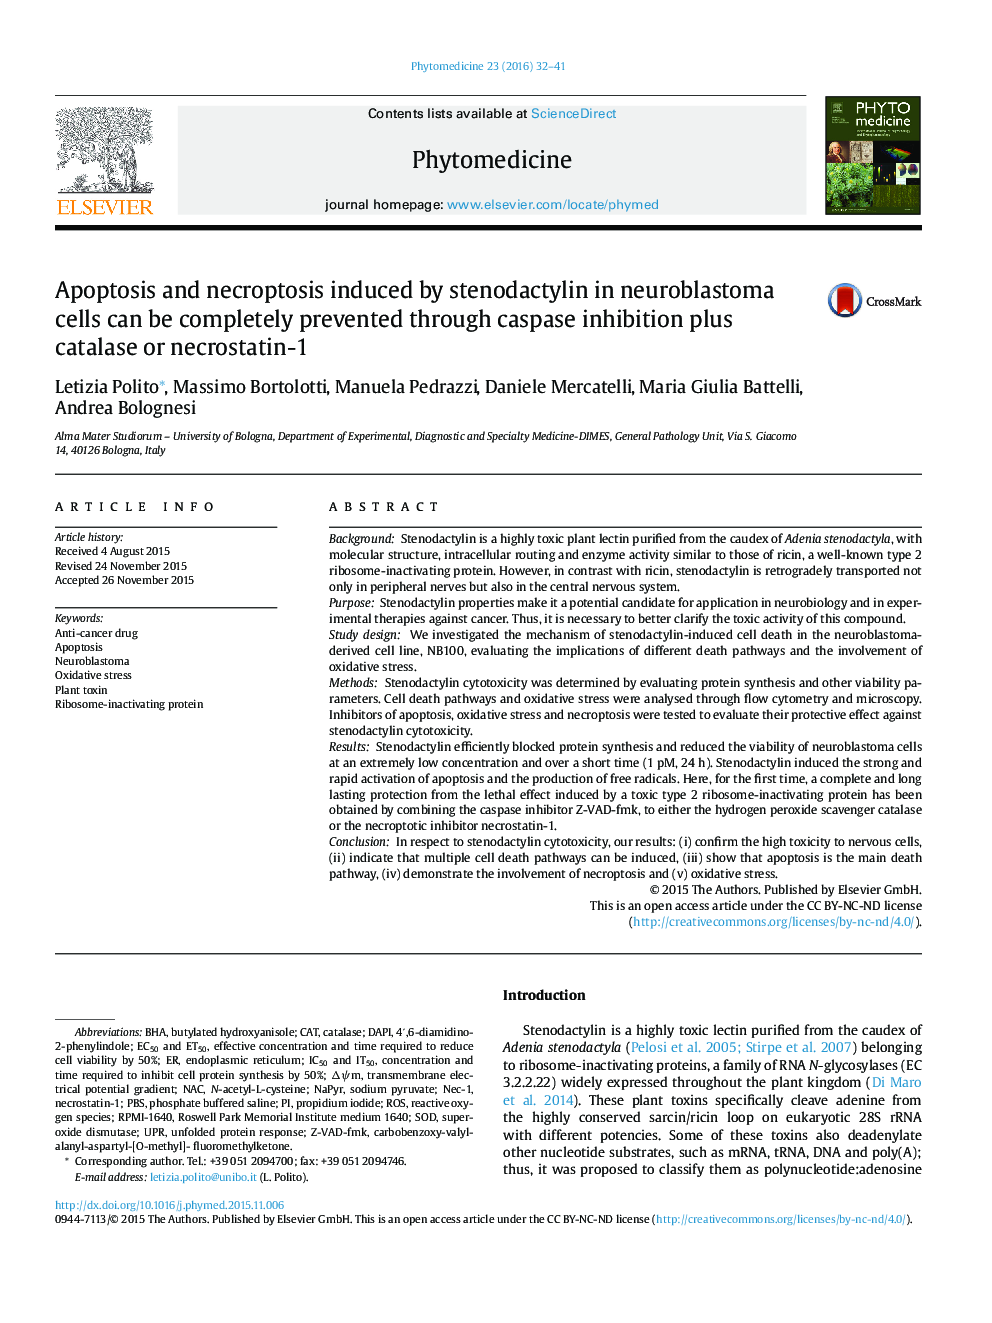 آپوپتوز و نروپتوزیس ناشی از استنوداتکتین در سلول های نوروبلاستوما می توانند به طور کامل از طریق مهار شدن کاسپاز به همراه کاتالاز یا نیکستراتین-1 